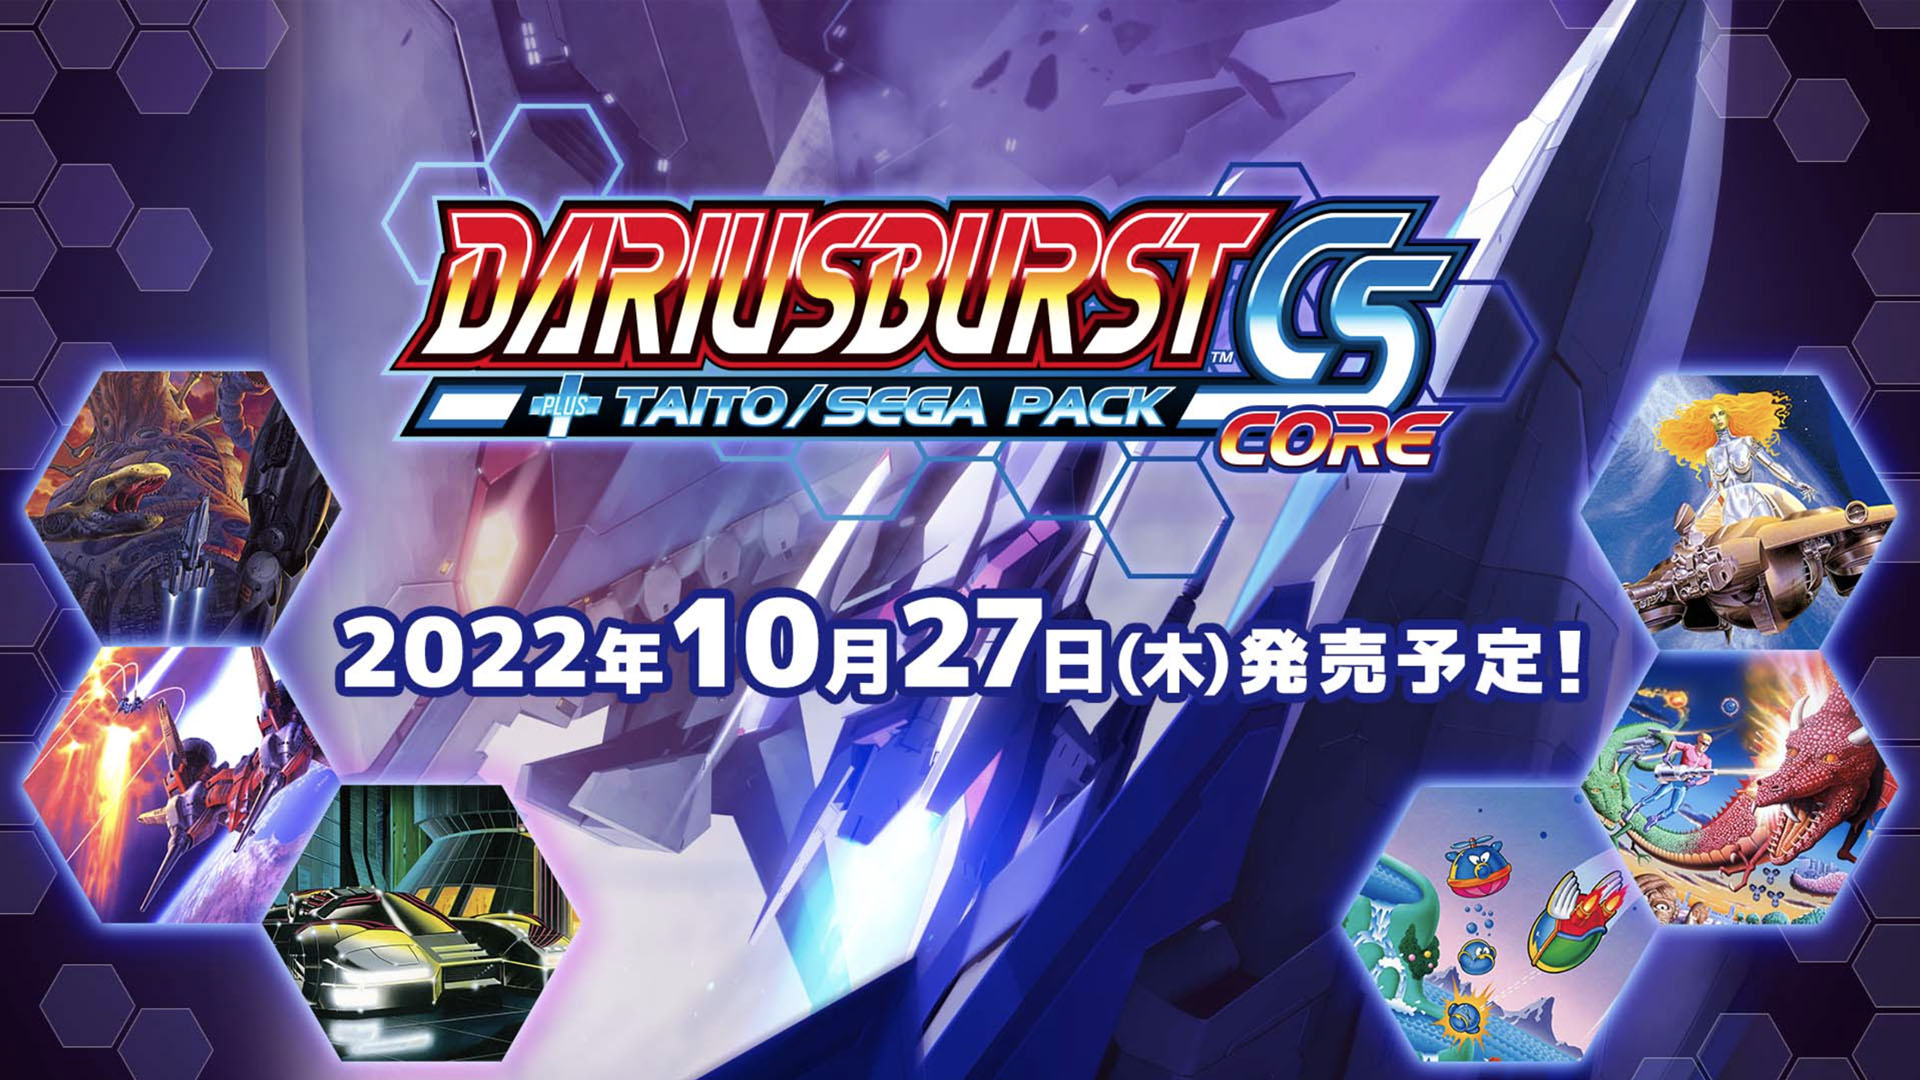 DARIUSBURST CS Core + Taito / Sega Pack announced for Switch